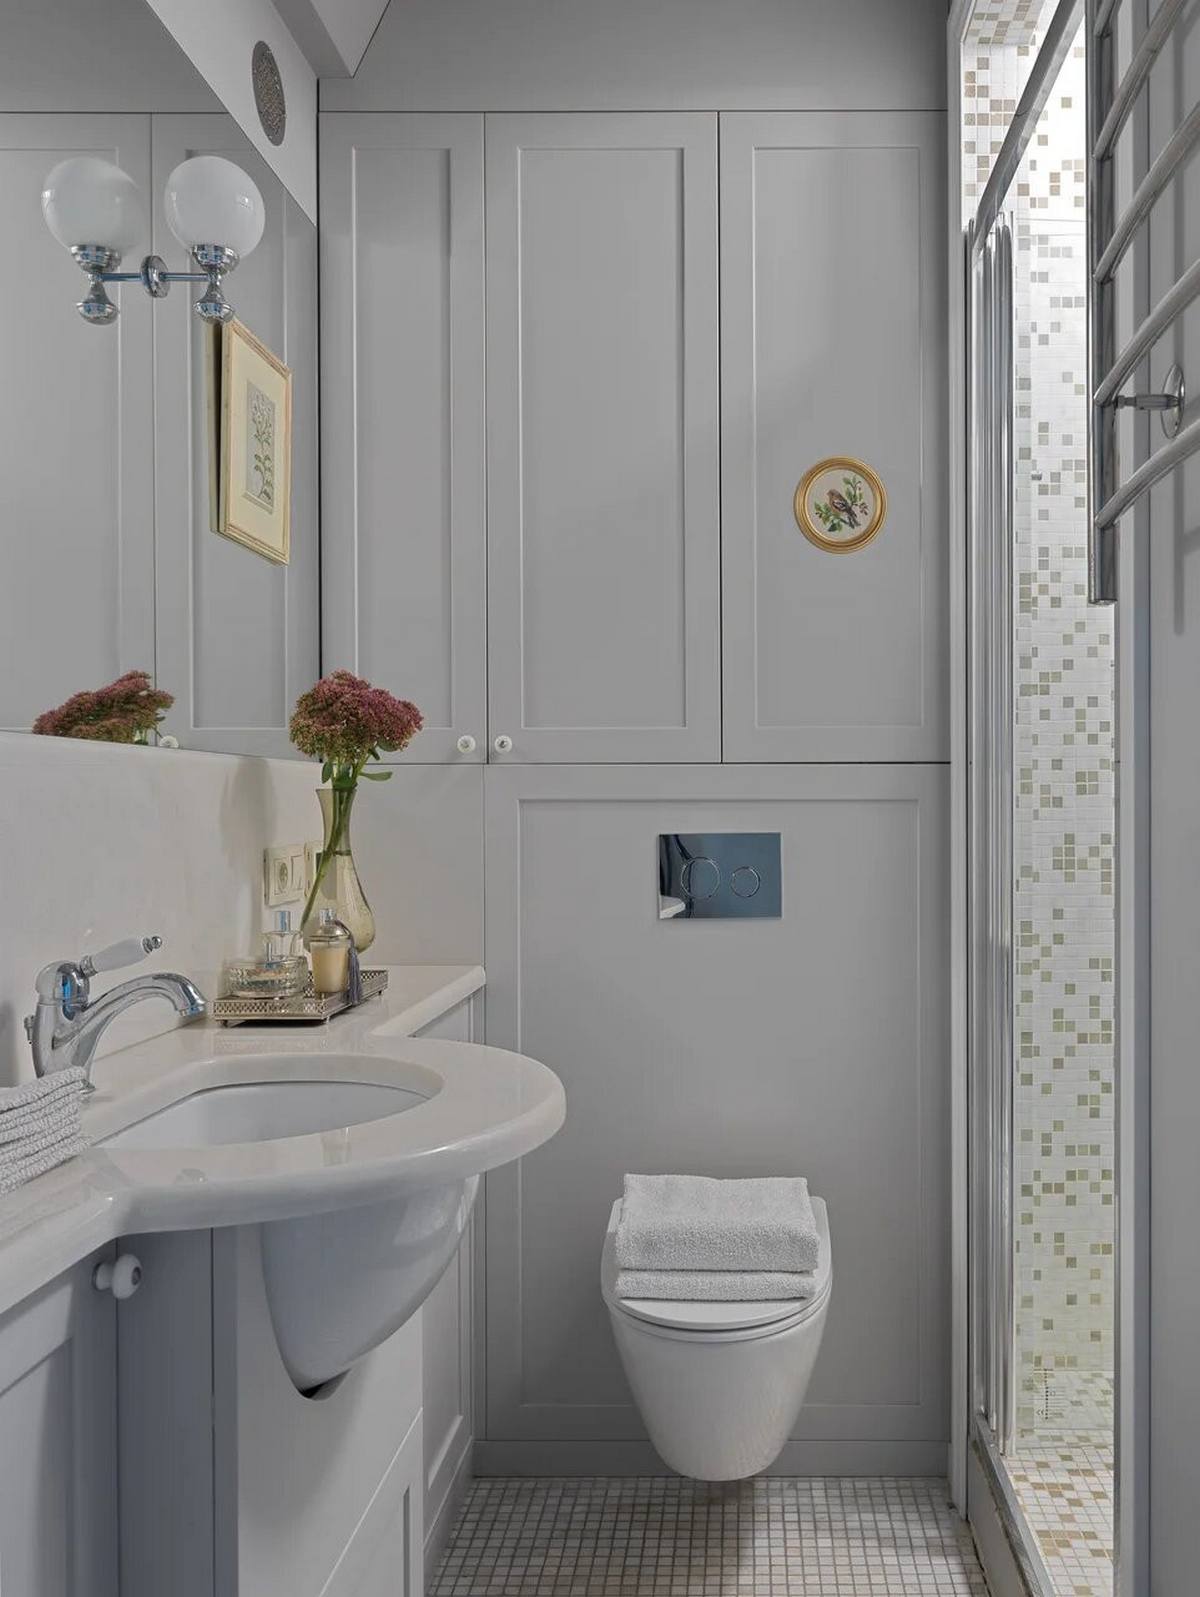 Nếu khu vực sinh hoạt chung thiết kế theo phong cách đồng quê cổ điển thì phòng tắm và nhà vệ sinh hiện đại hơn với toilet gắn tường giải phóng diện tích mặt sàn. Hệ tủ lưu trữ ốp tường cũng giúp cho căn phòng gọn gàng, tươi sáng hơn.